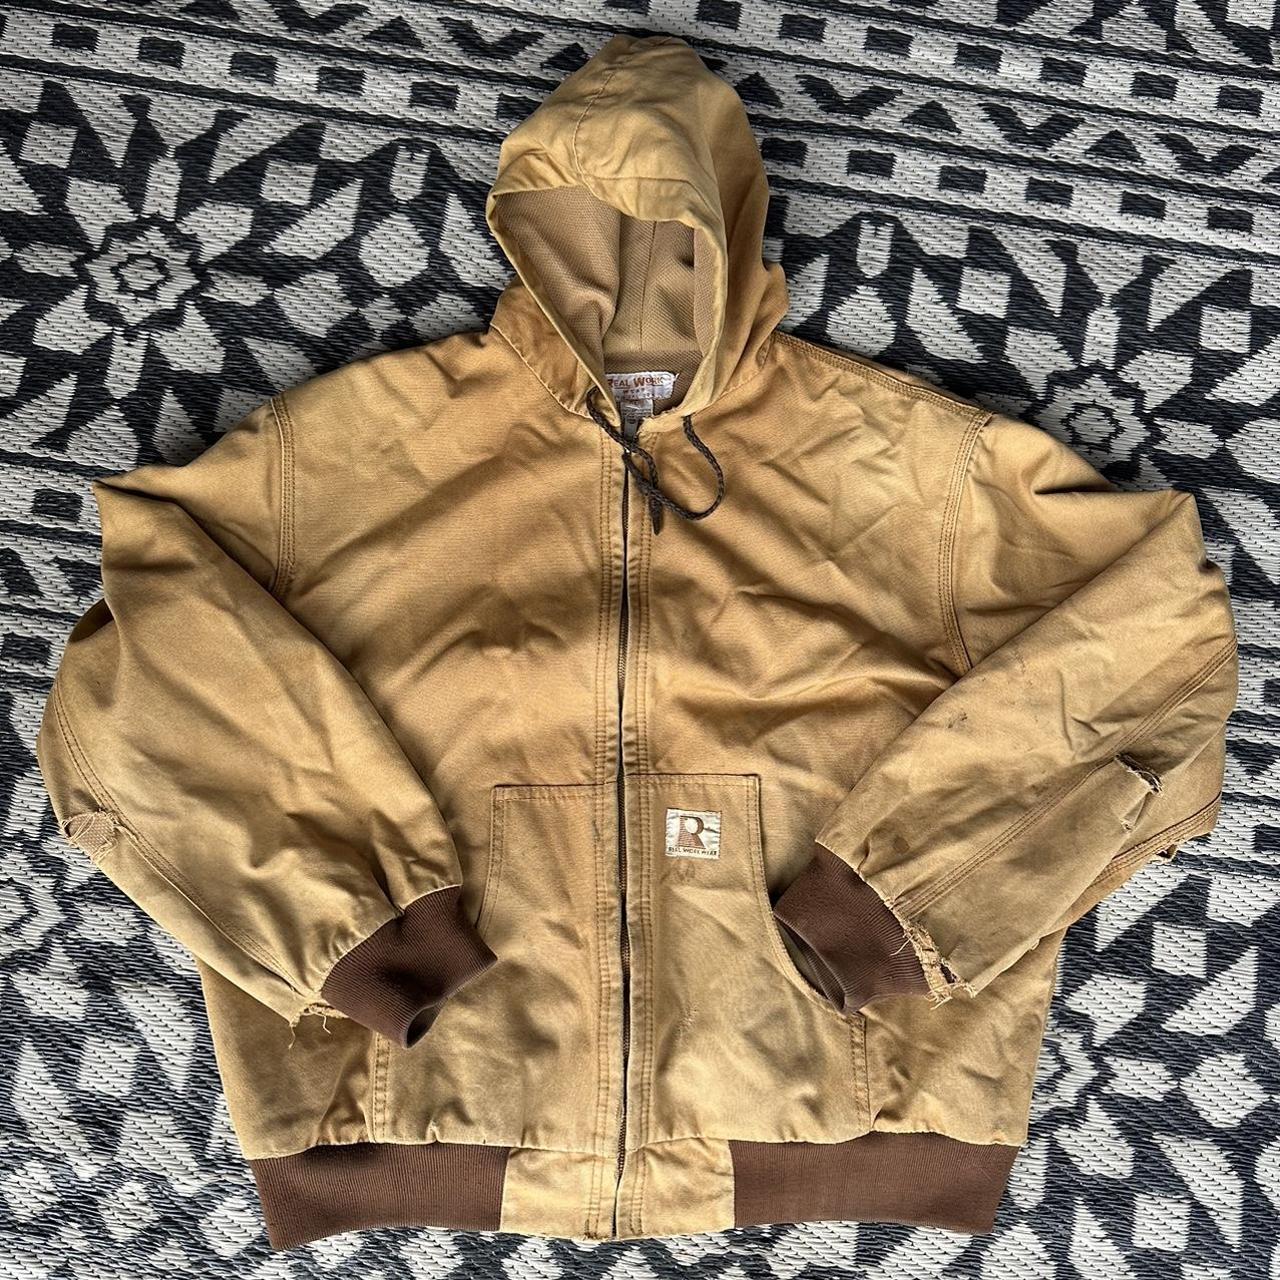 Carhartt style 90s vintage hooded jacket - Depop